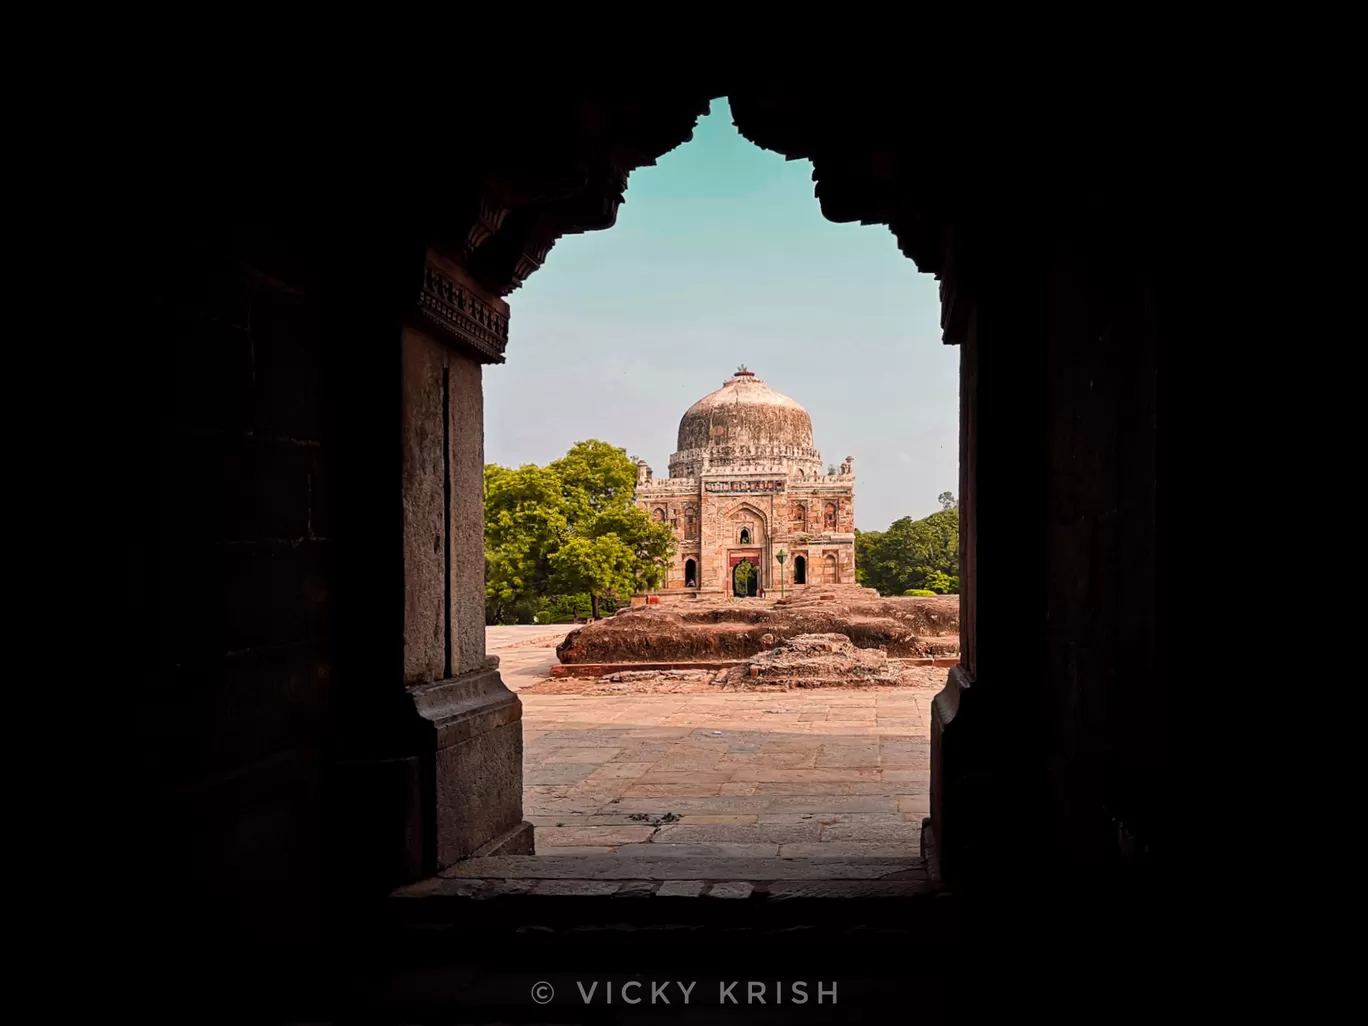 Photo of New Delhi By Vicky Krish